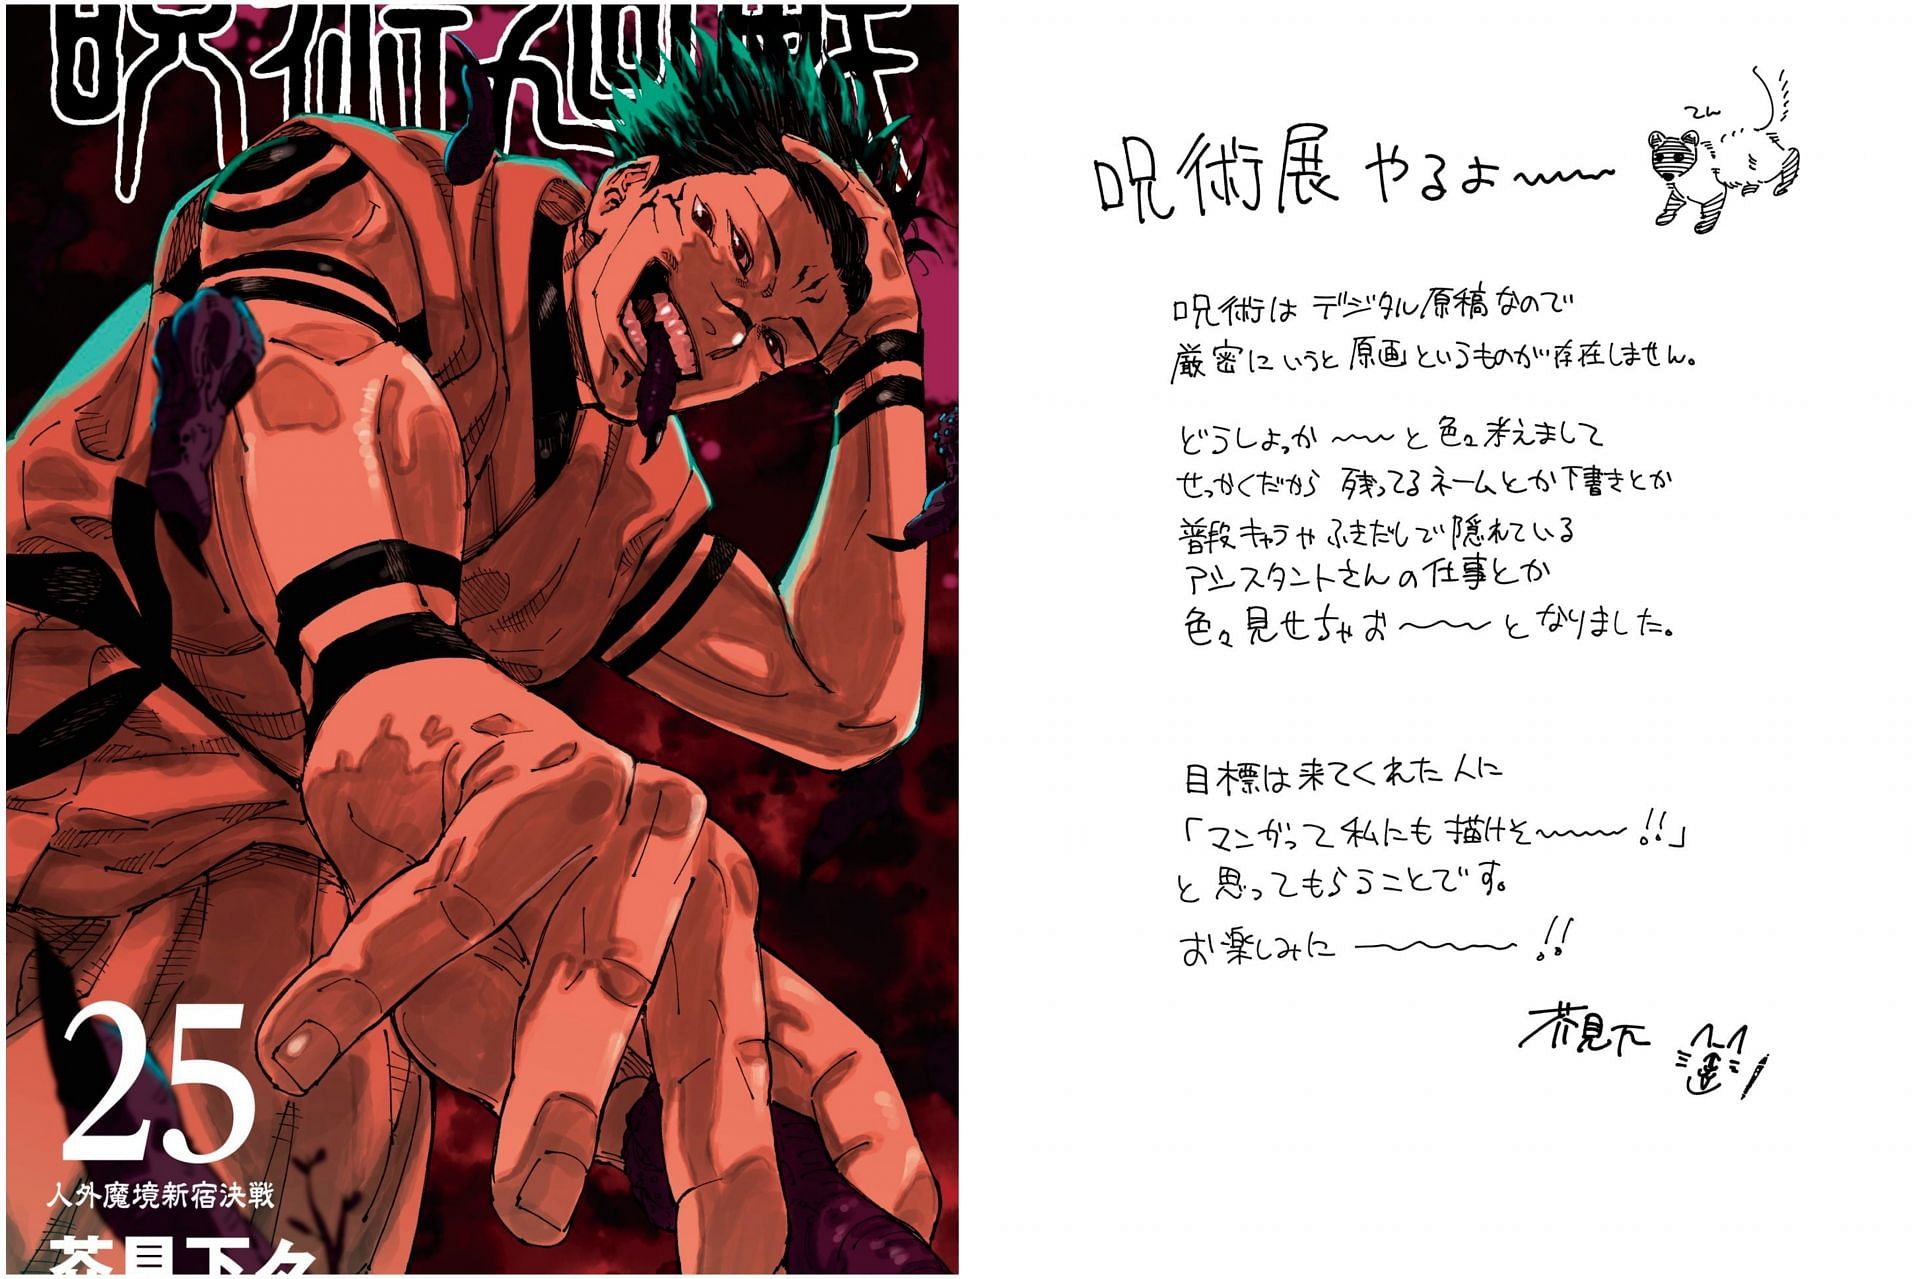 Volume 25 cover and Akutami&#039;s message (Image via Shueisha/ Gege Akutami)